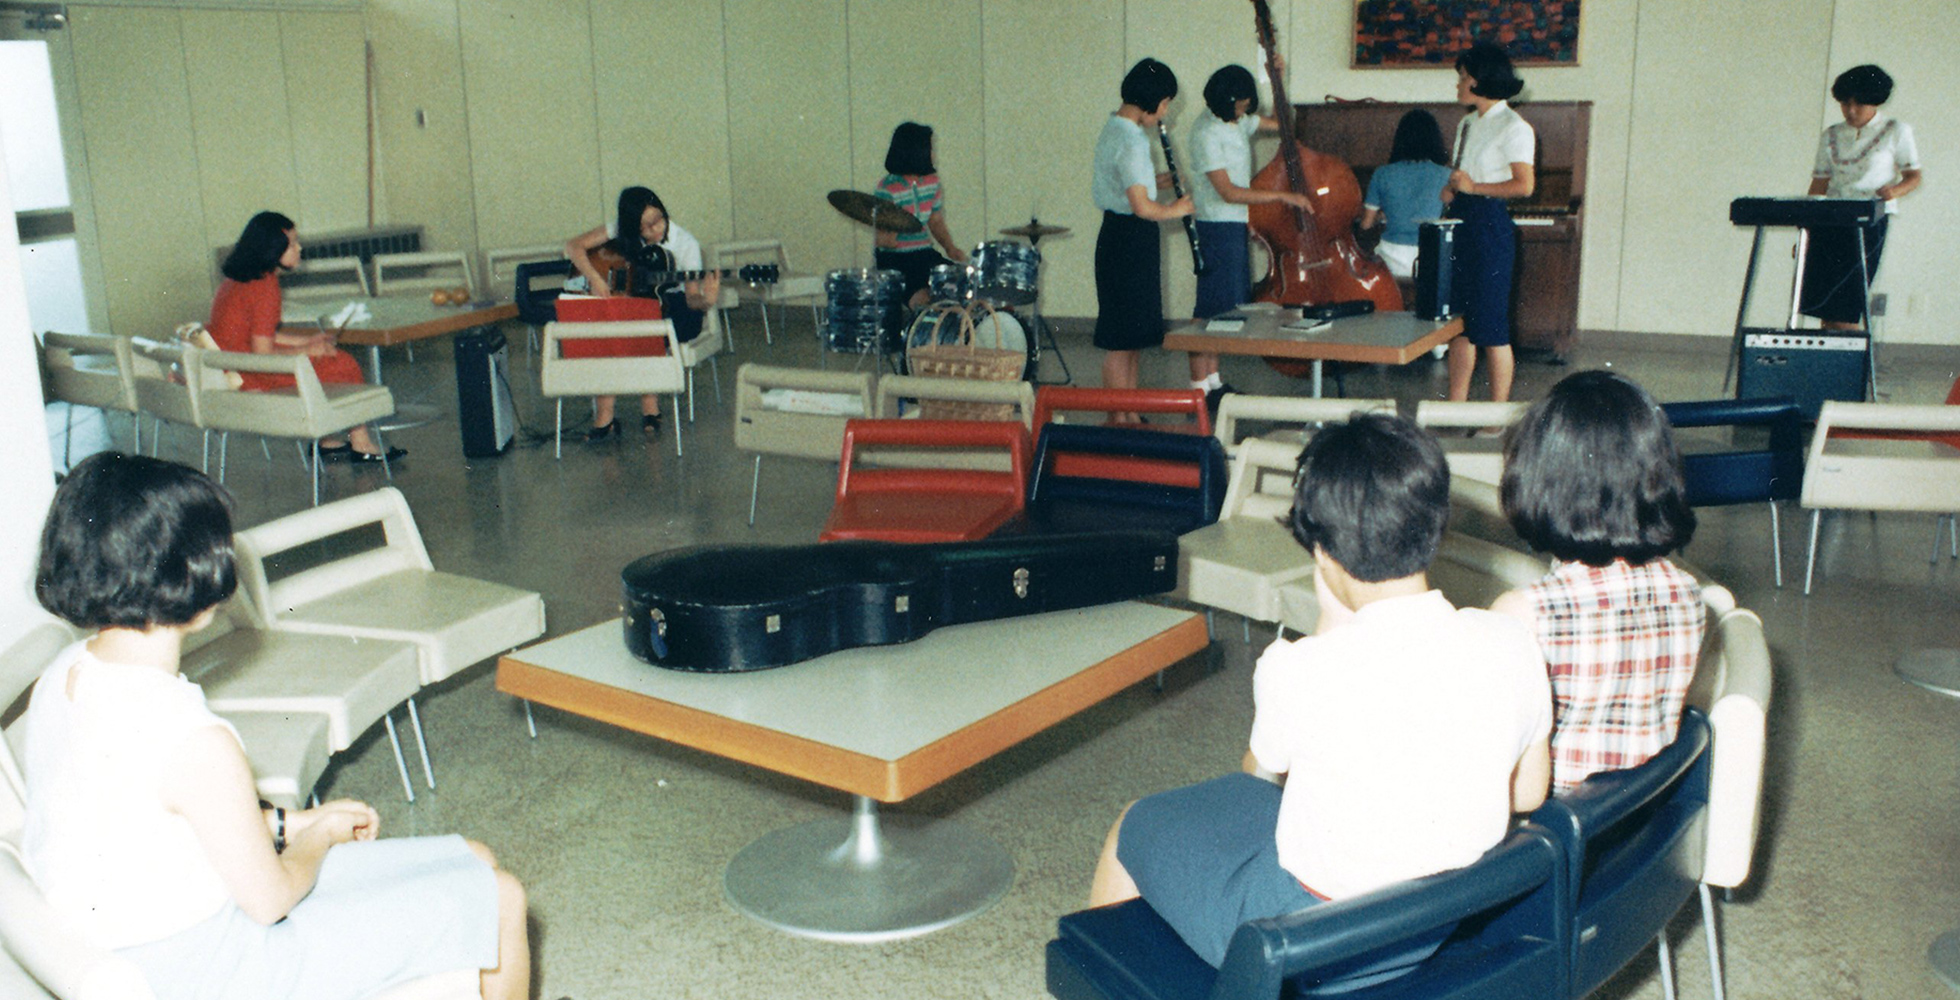 さまざまな楽器をたしなむ学生たち